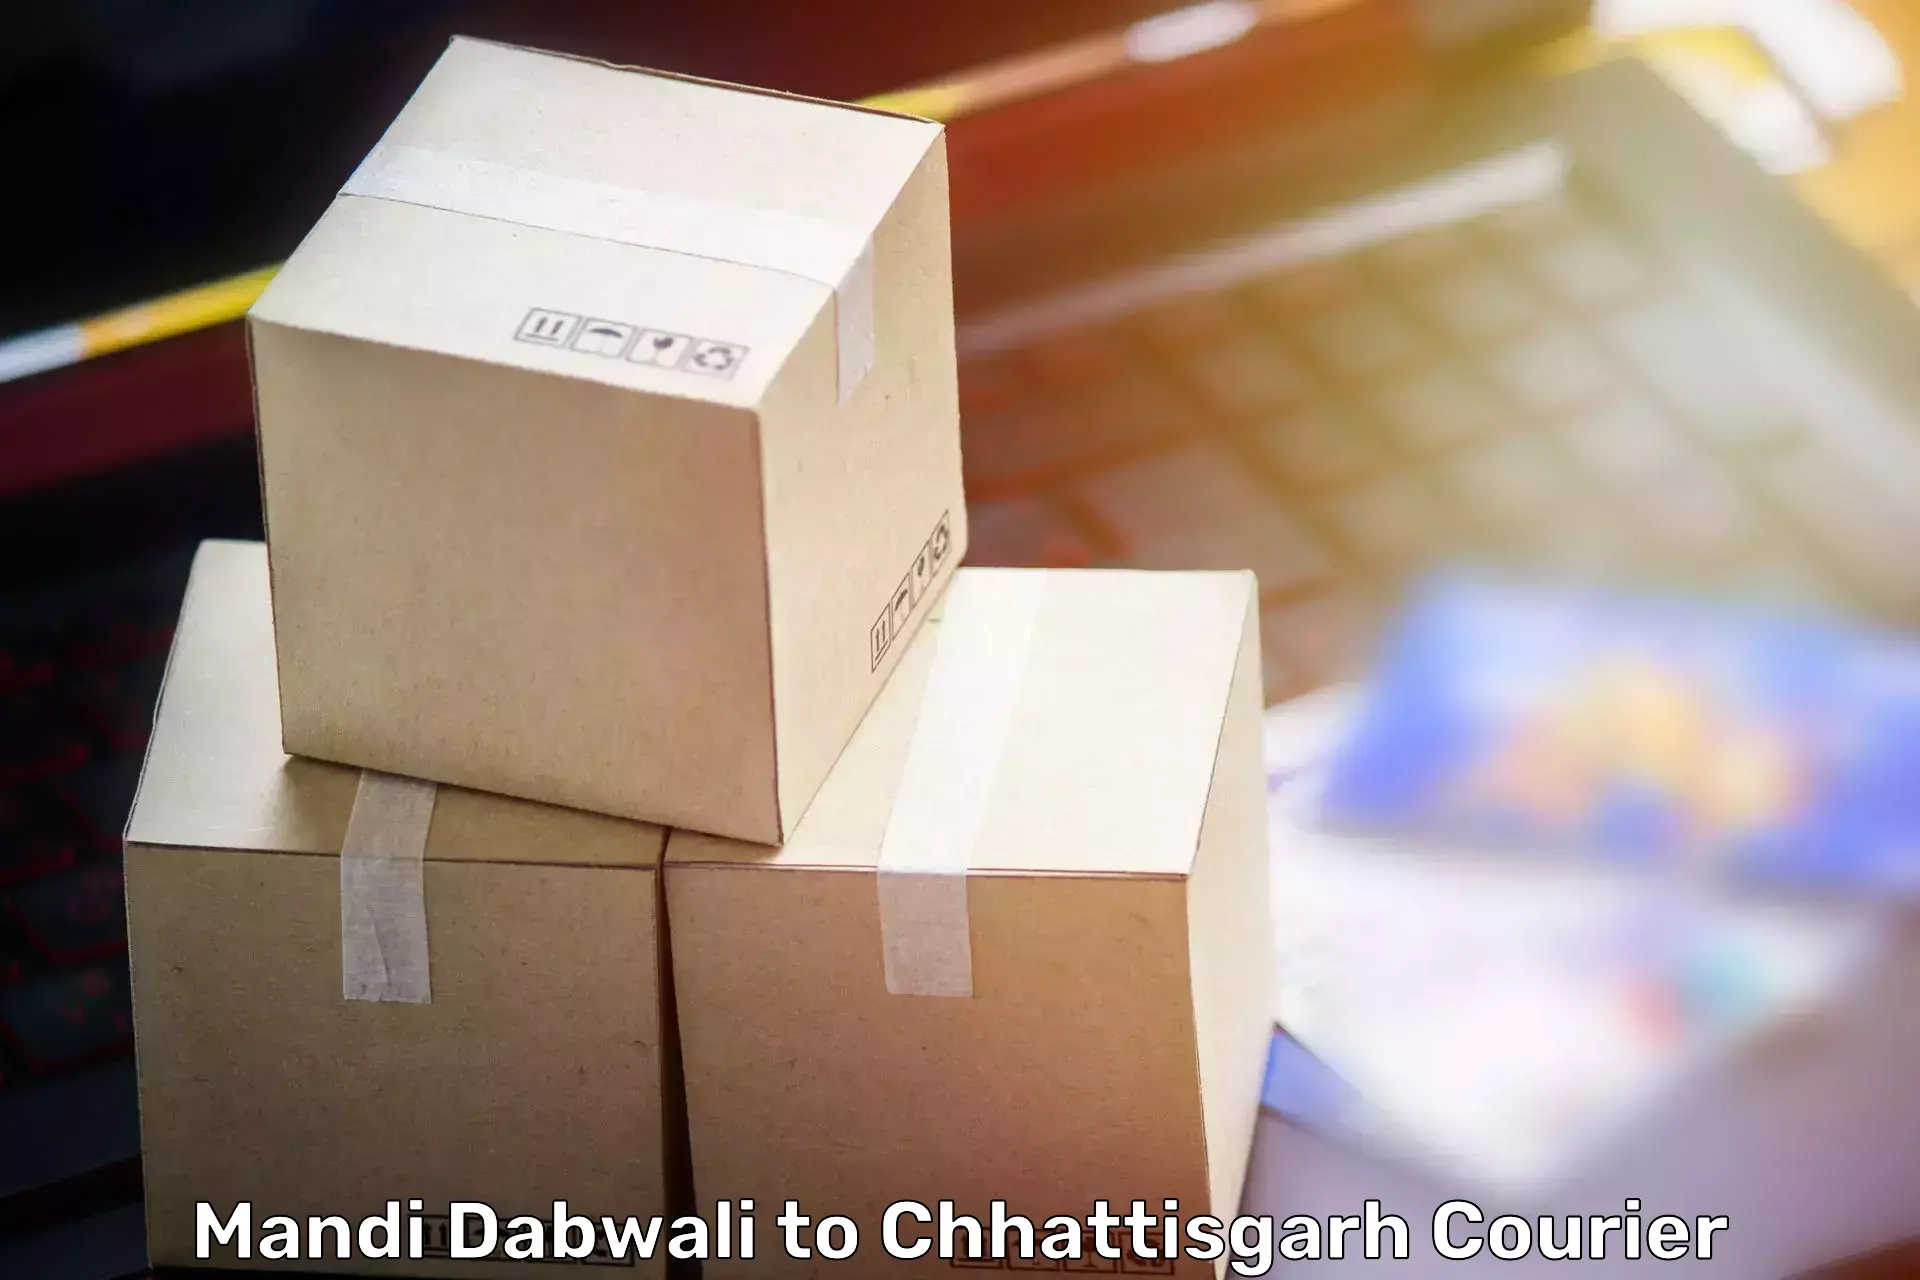 Furniture delivery service Mandi Dabwali to Chhattisgarh